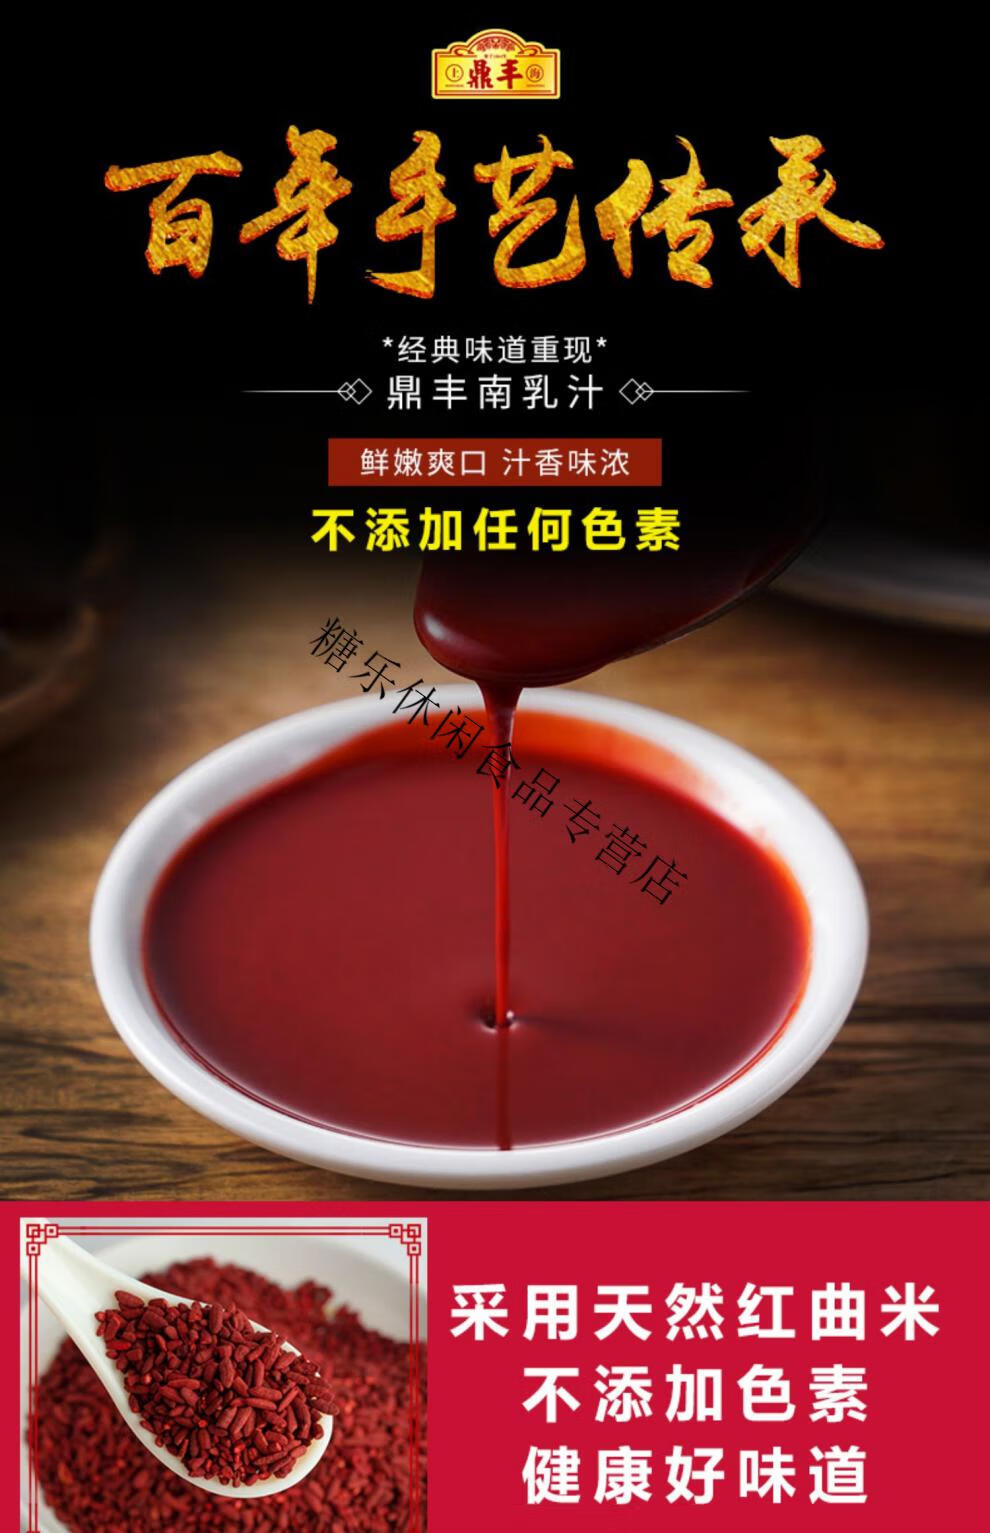 上海鼎丰南乳汁560ml红方腐乳汁炖东坡肉红烧肉调料腐乳酱